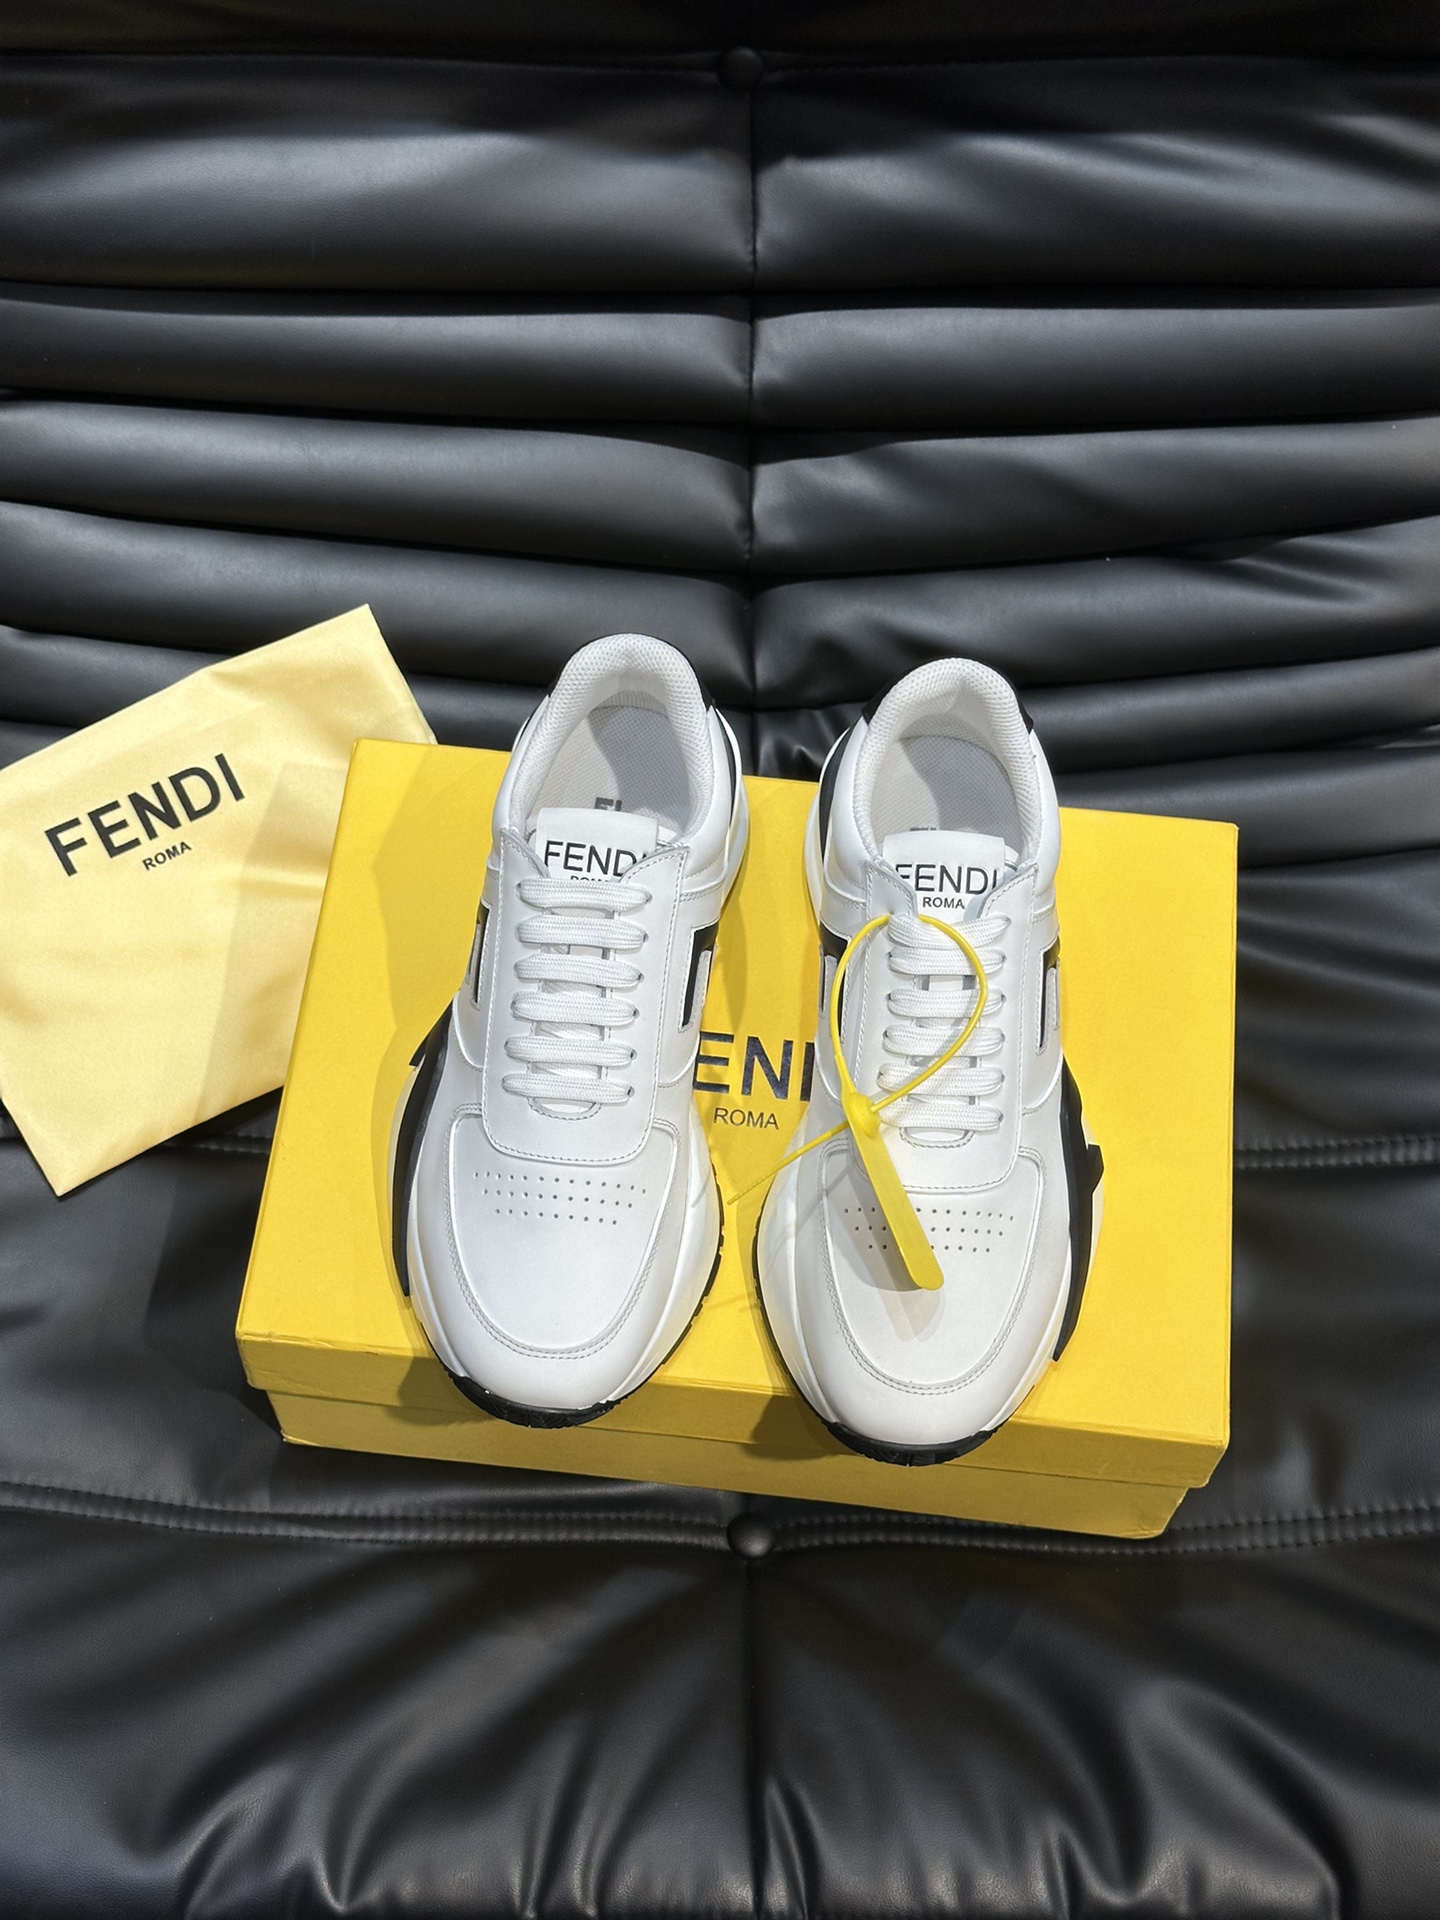 FENDI/芬迪男士新款系带运动鞋出货采用近几年比较流行的版型设计外观时尚大气由高科技布料拼接绒面皮革打